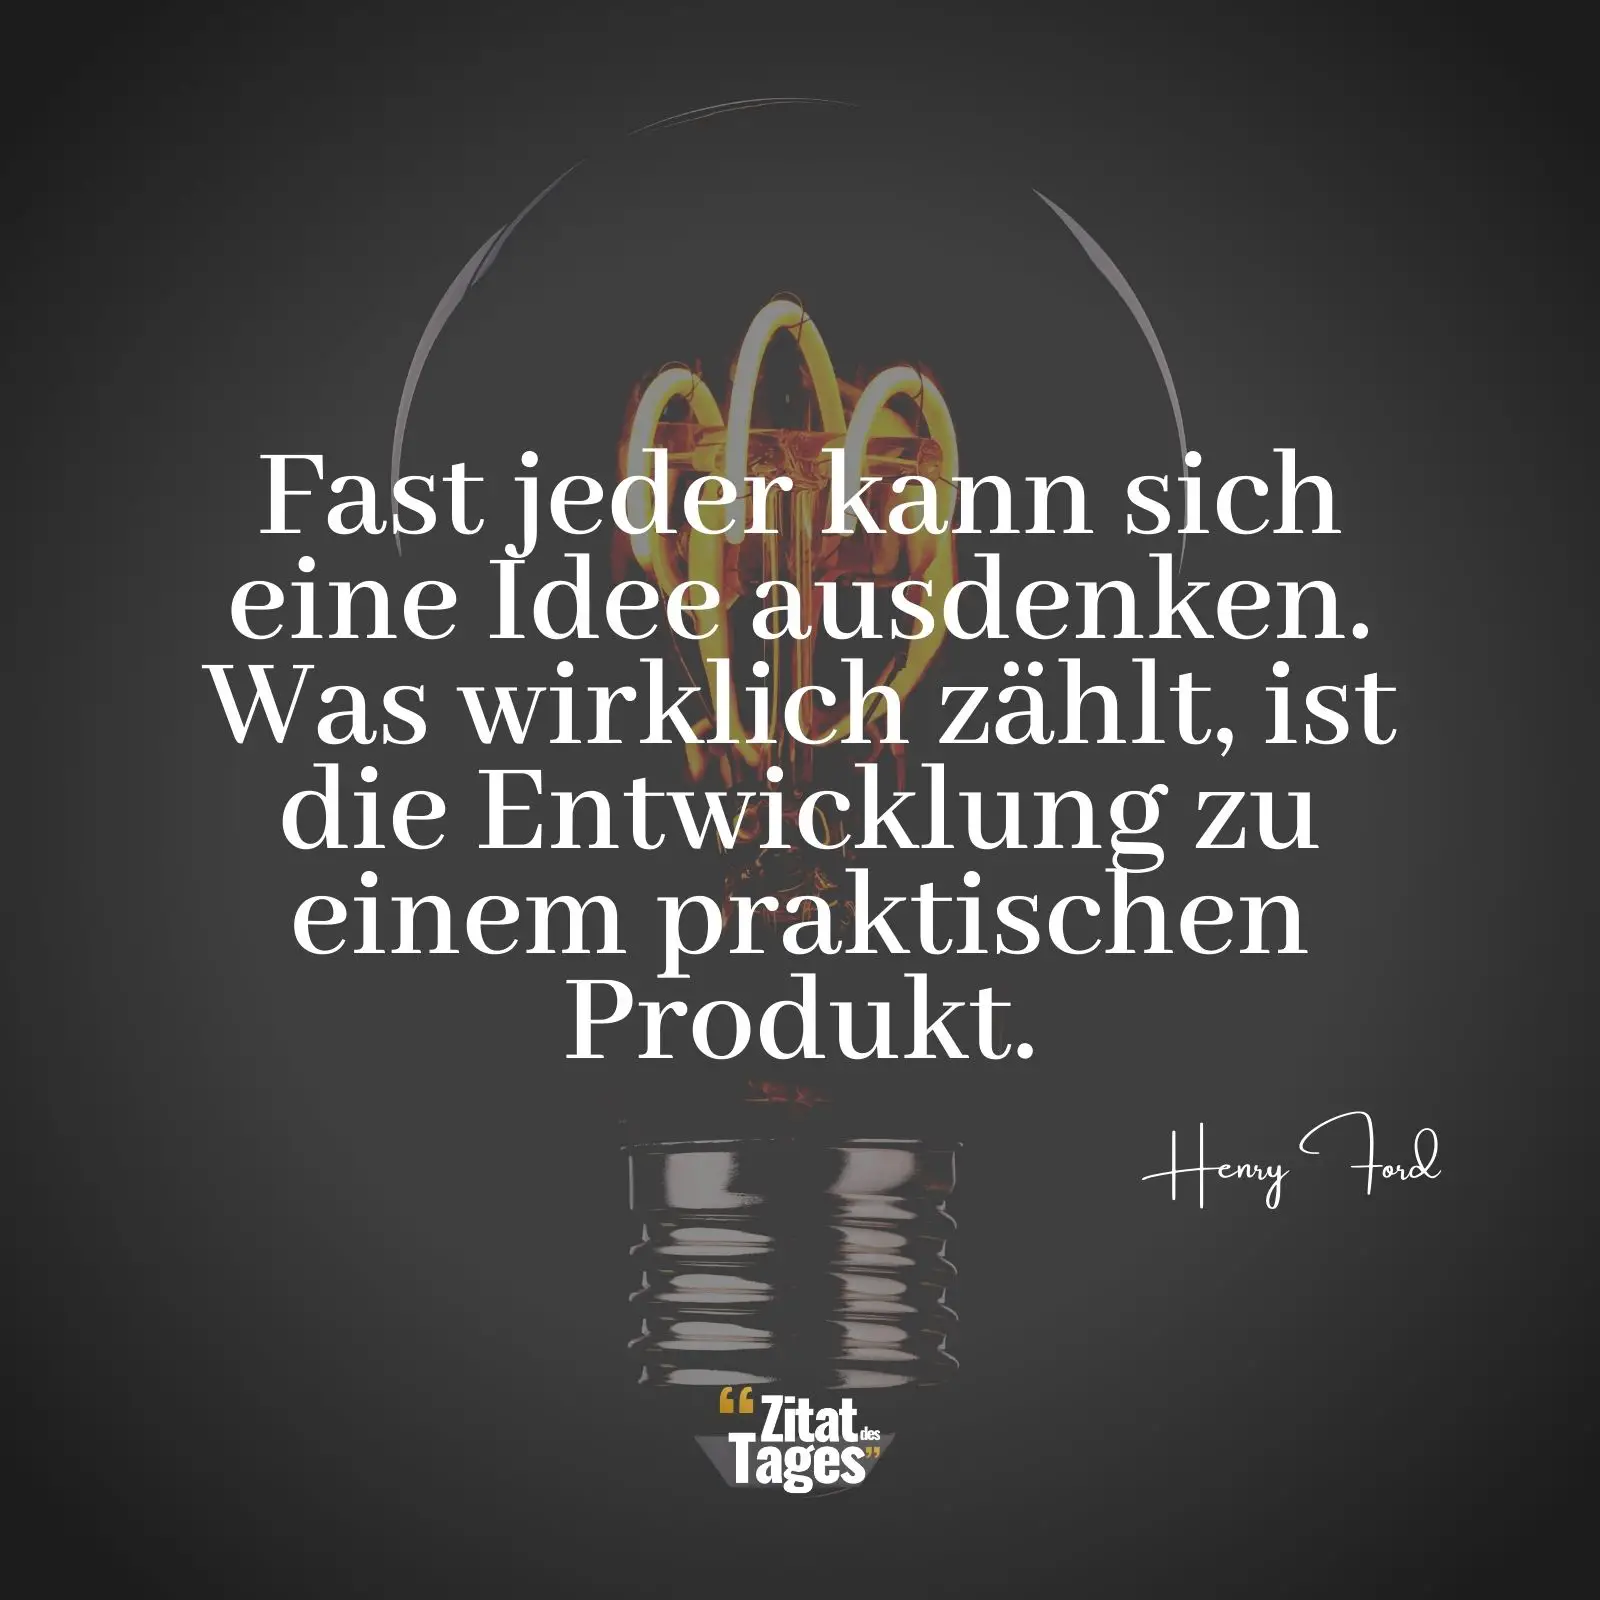 Fast jeder kann sich eine Idee ausdenken. Was wirklich zählt, ist die Entwicklung zu einem praktischen Produkt. - Henry Ford